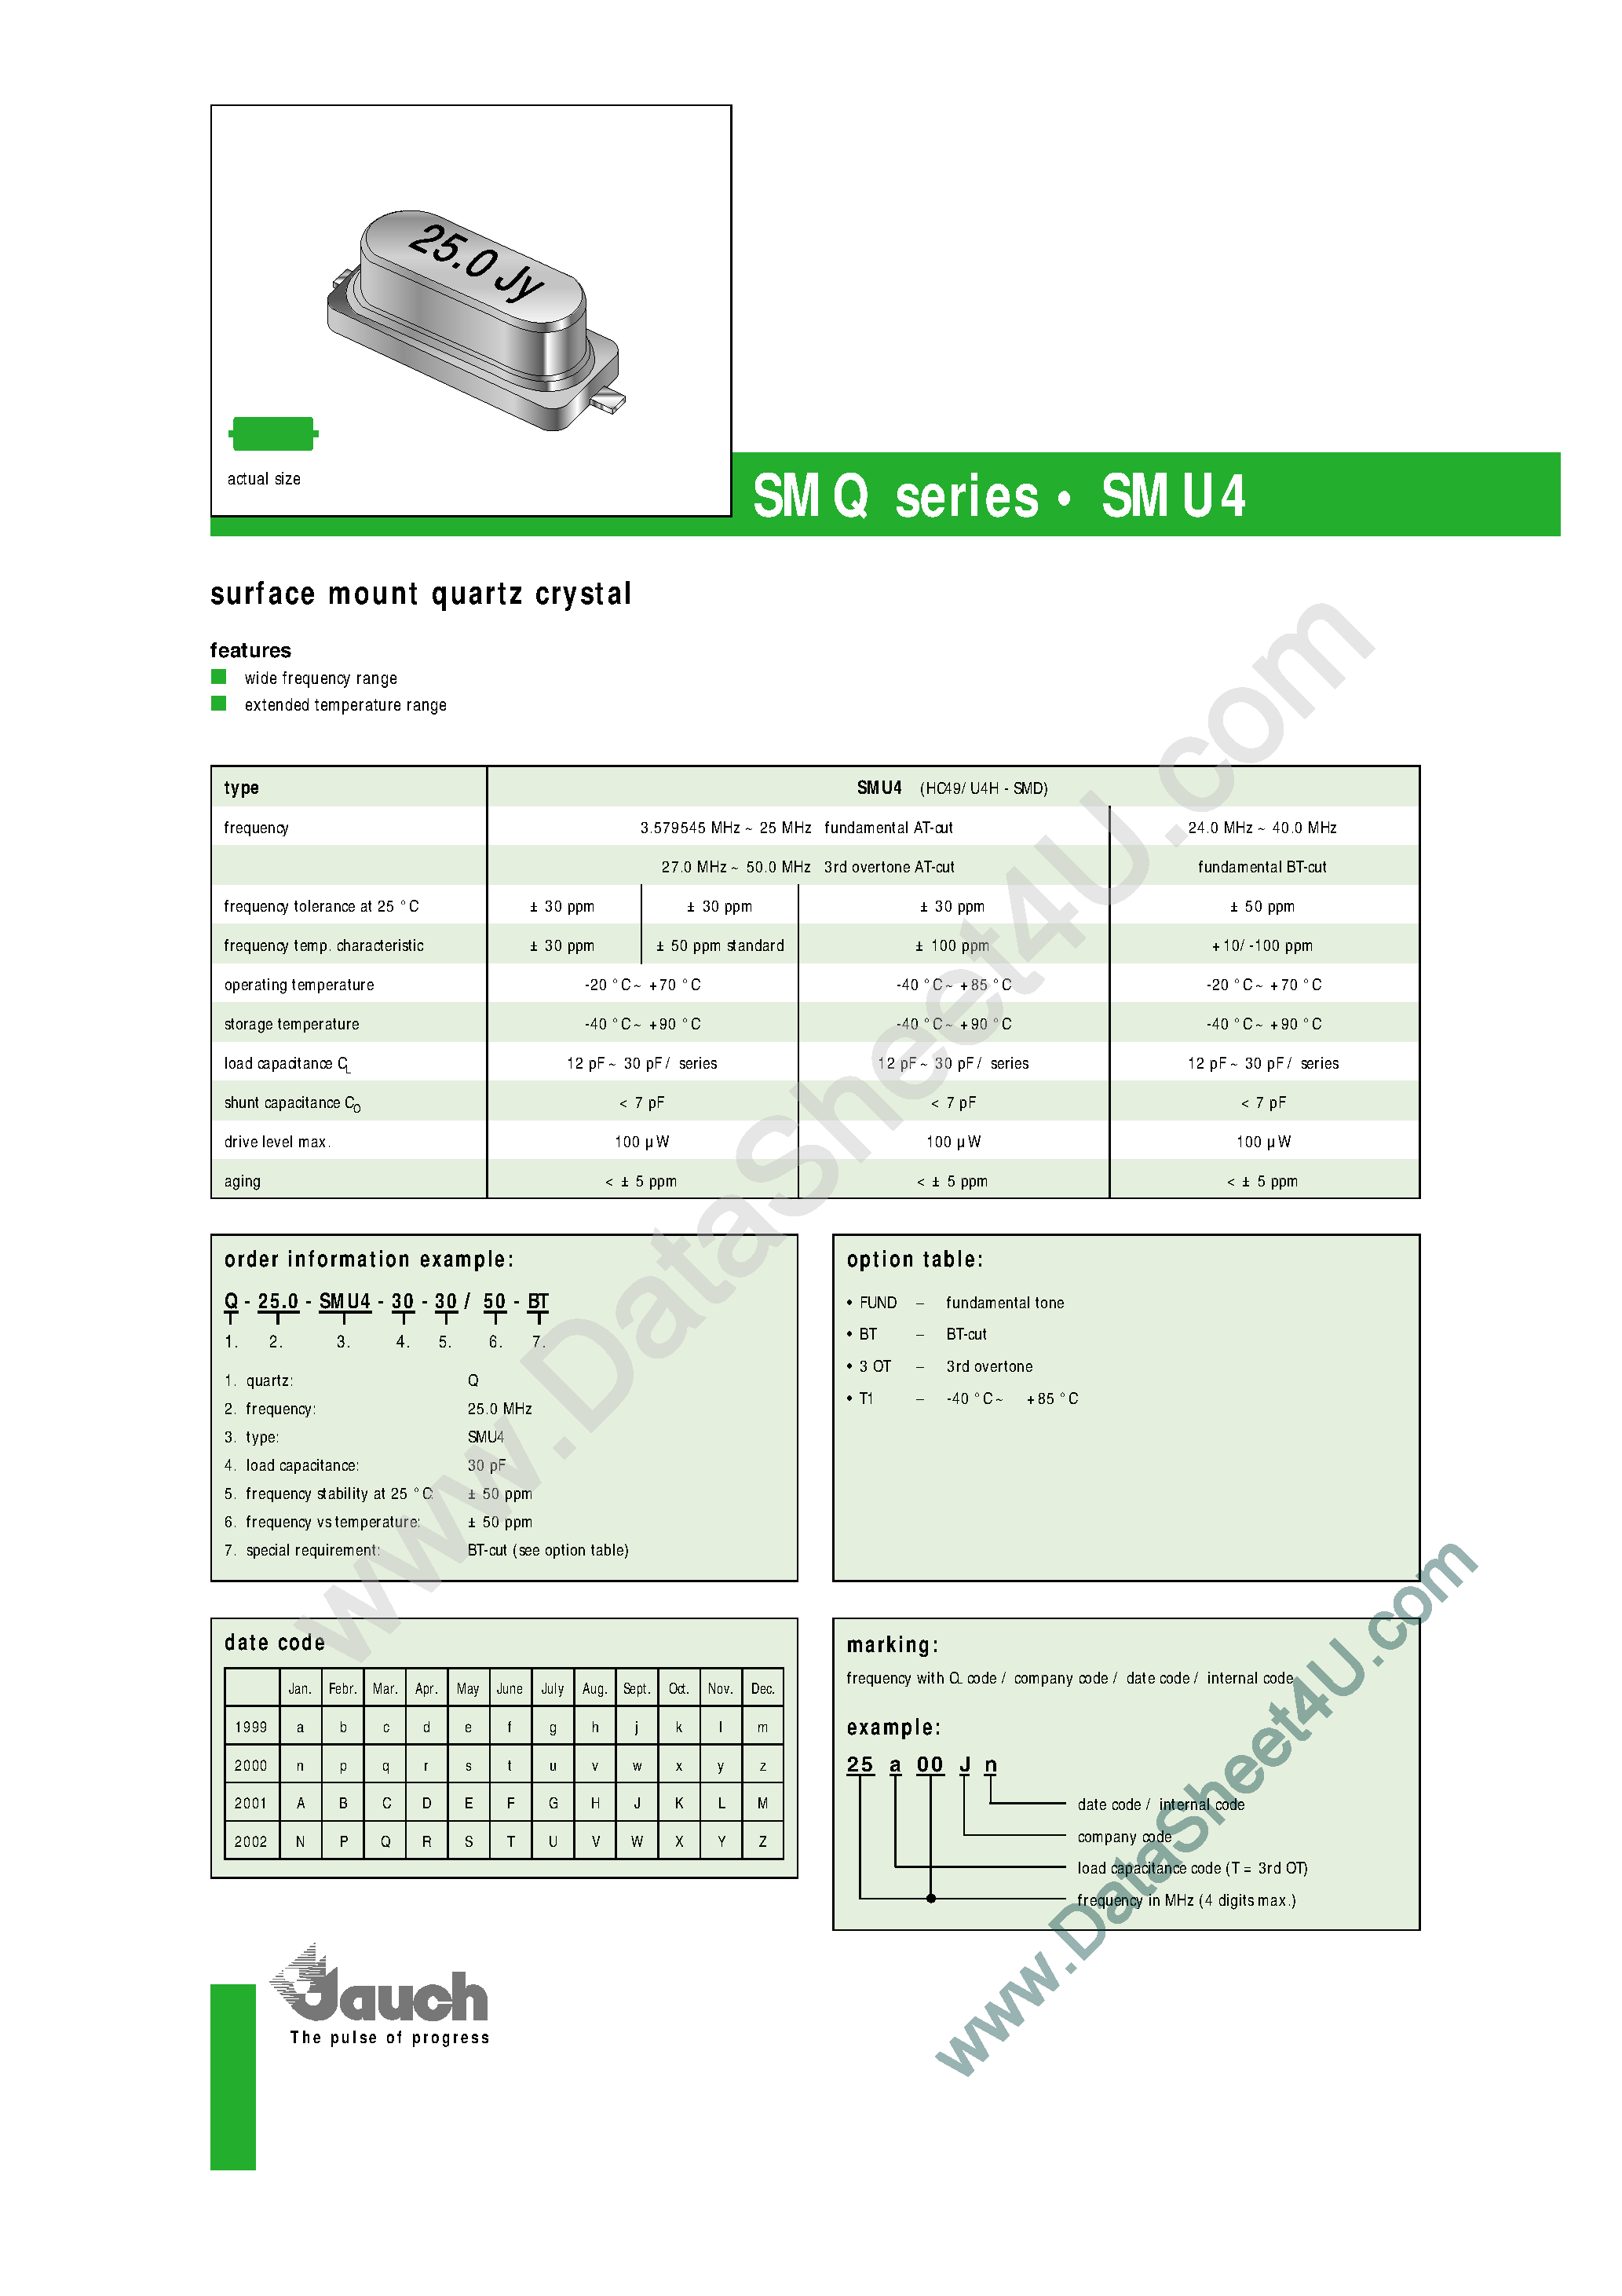 Даташит Q-25.0-SMU4-18-30-(SMU4 Series) Surface Mount Quartz Crystal страница 1